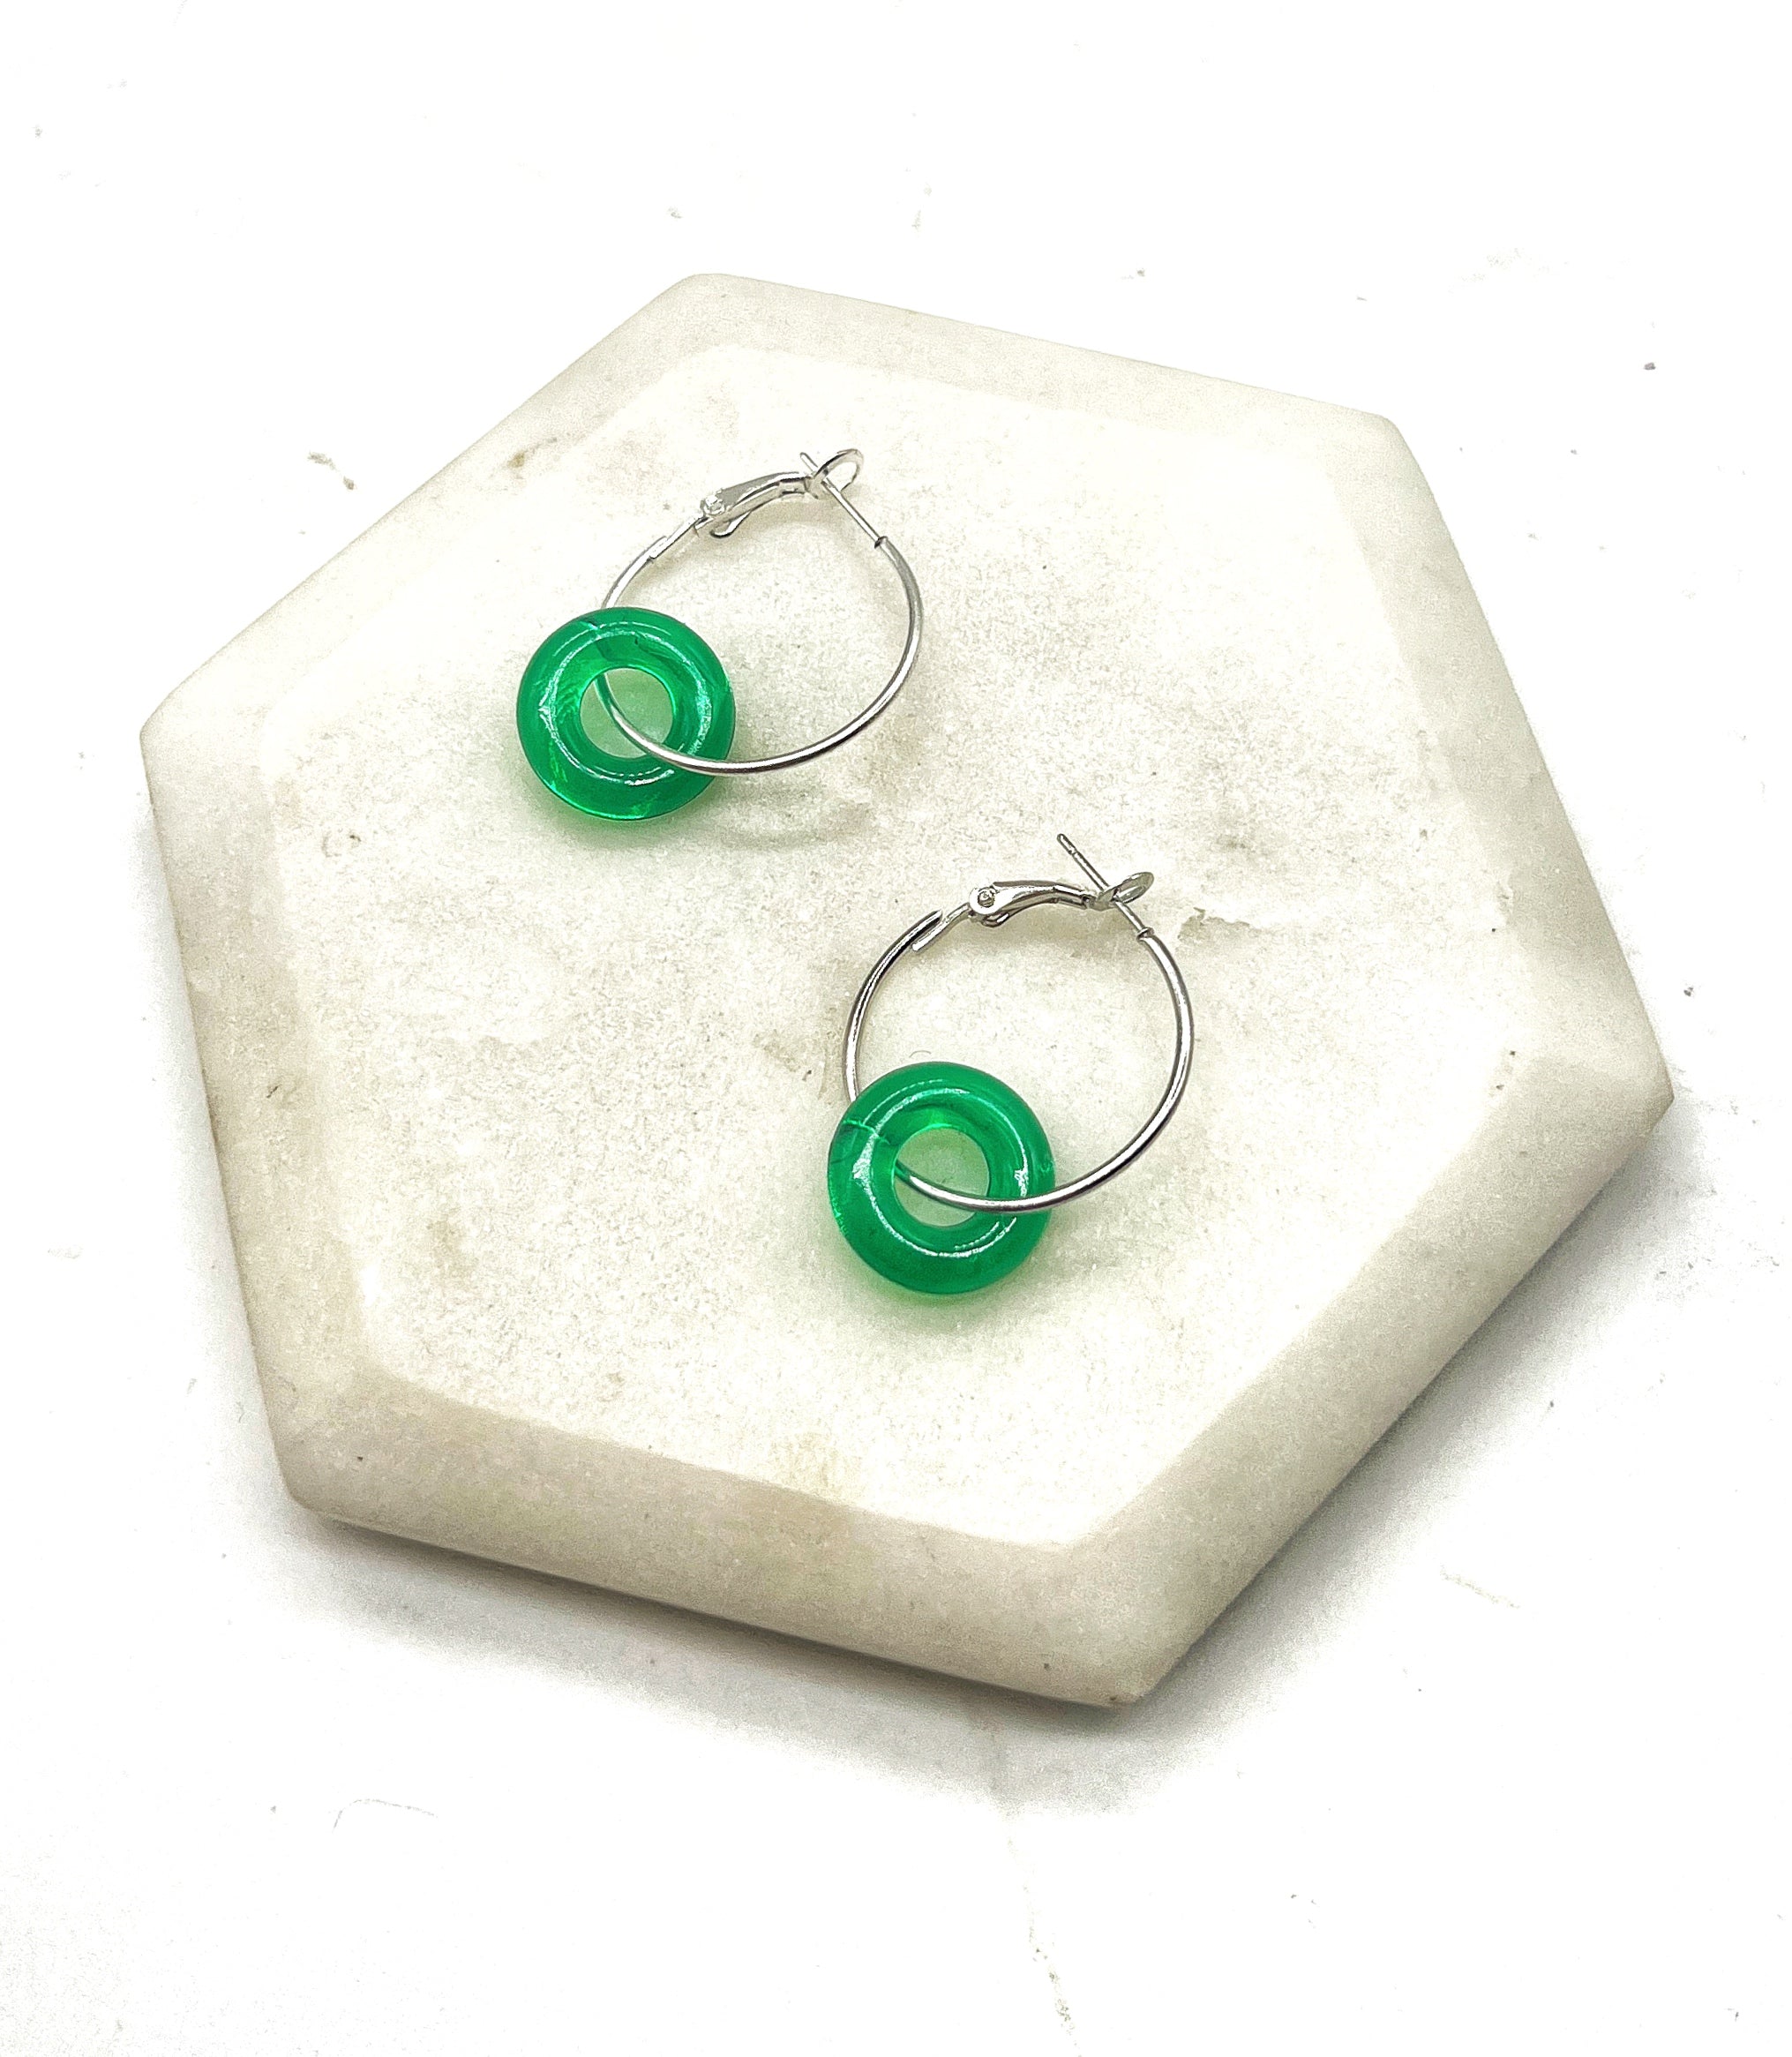 Green Resin Ring Mini Hoop Earrings